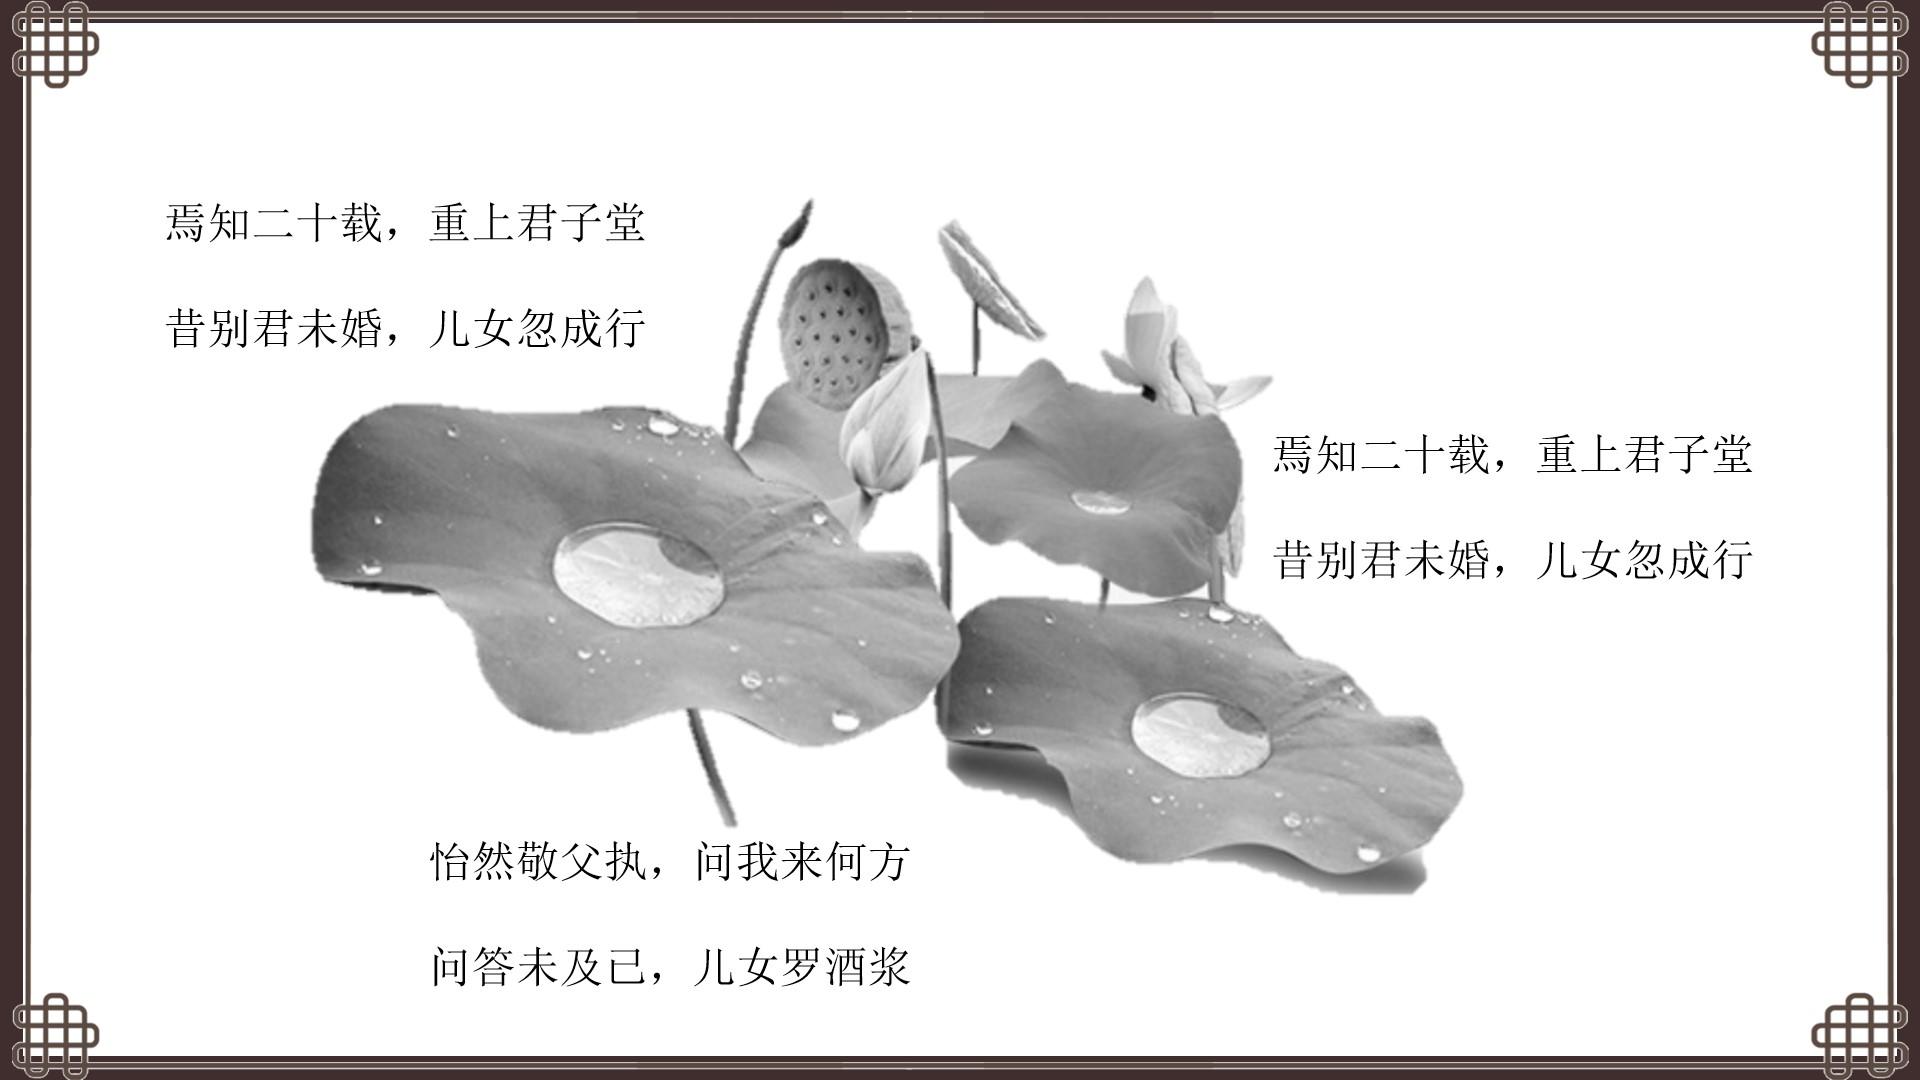 教育教学黑色灰色白色简洁中国风儿女君子成行酒浆云素材PPT模板1672580355974